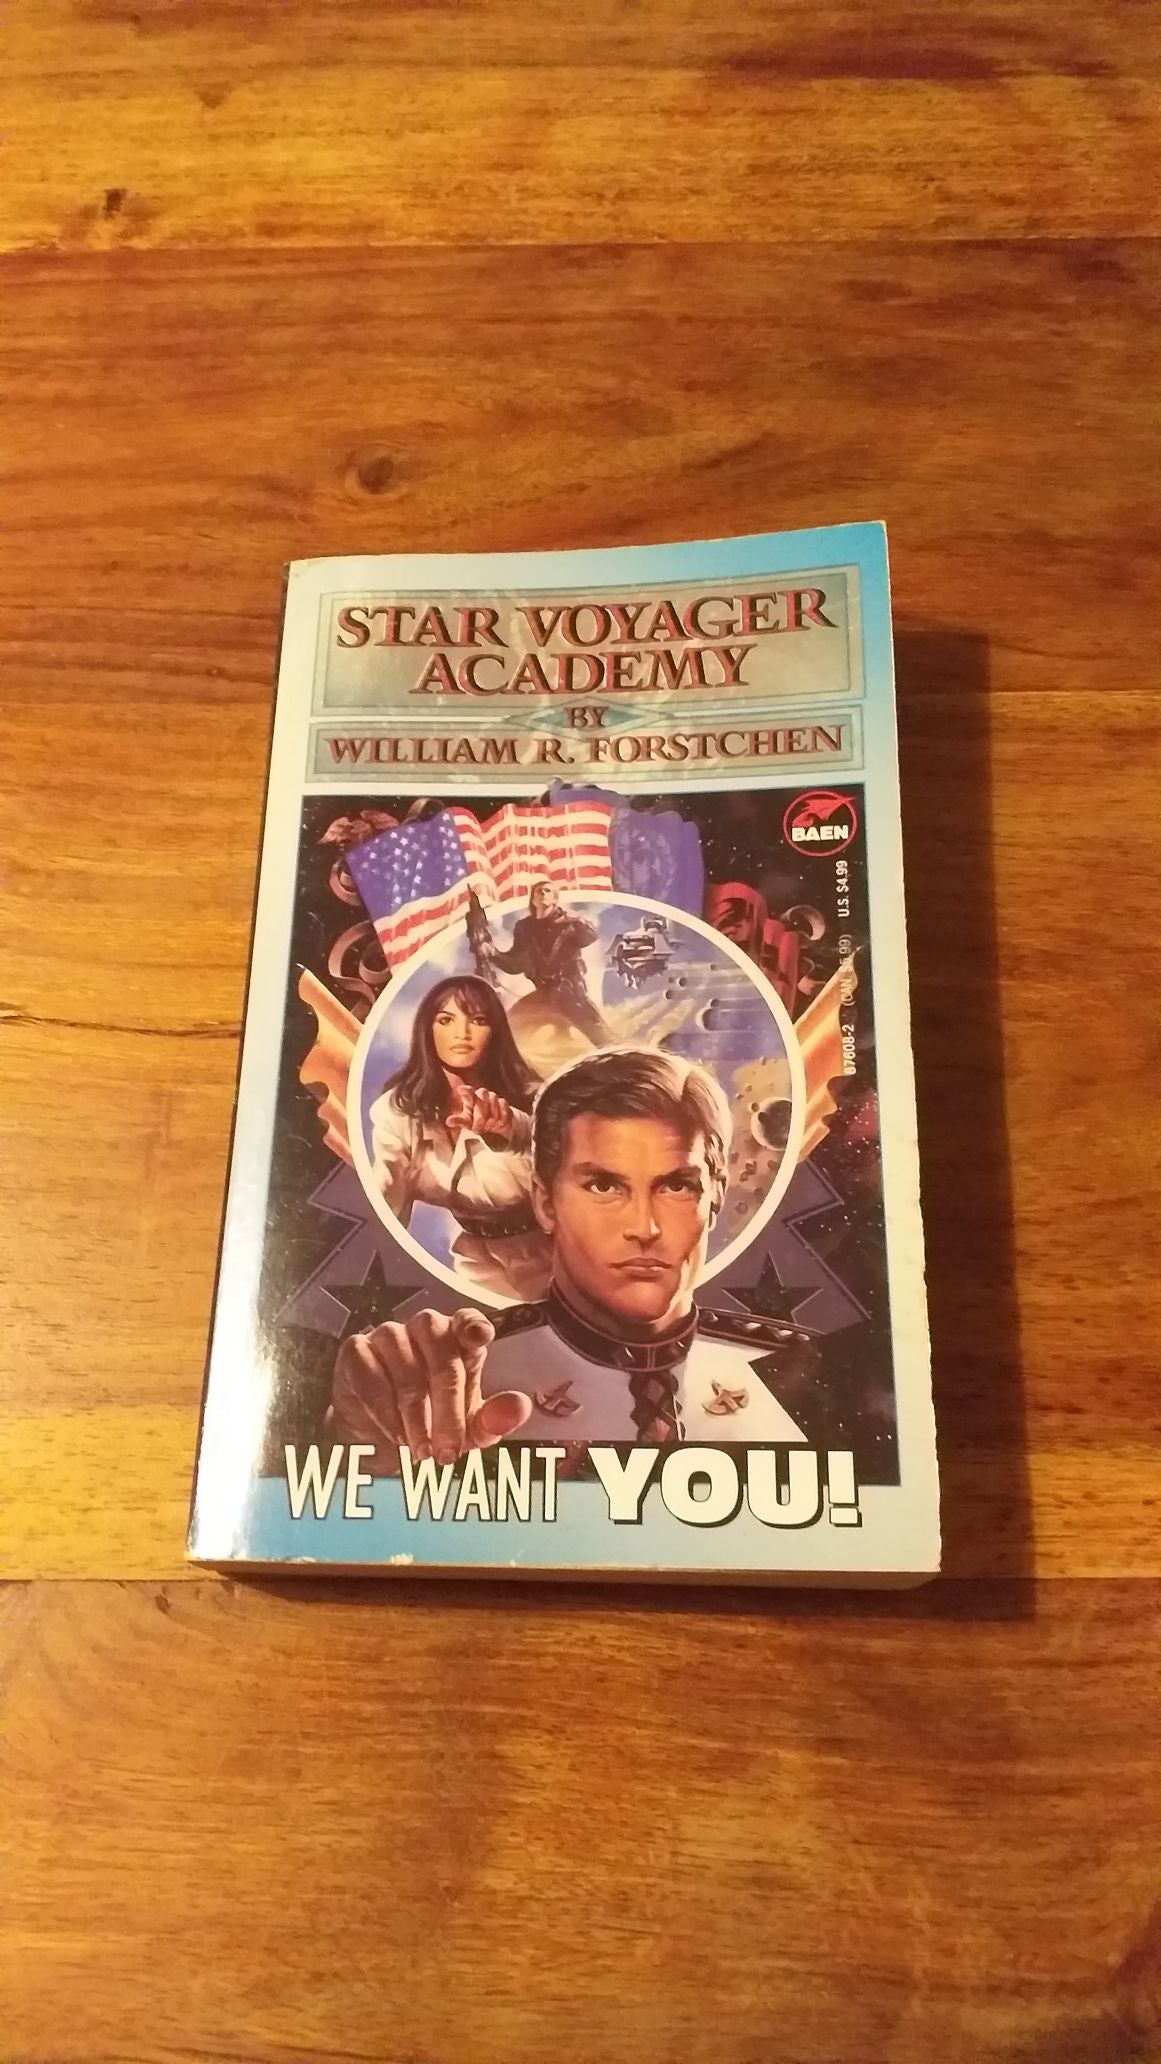 Star Voyager Academy by William R. Forstchen